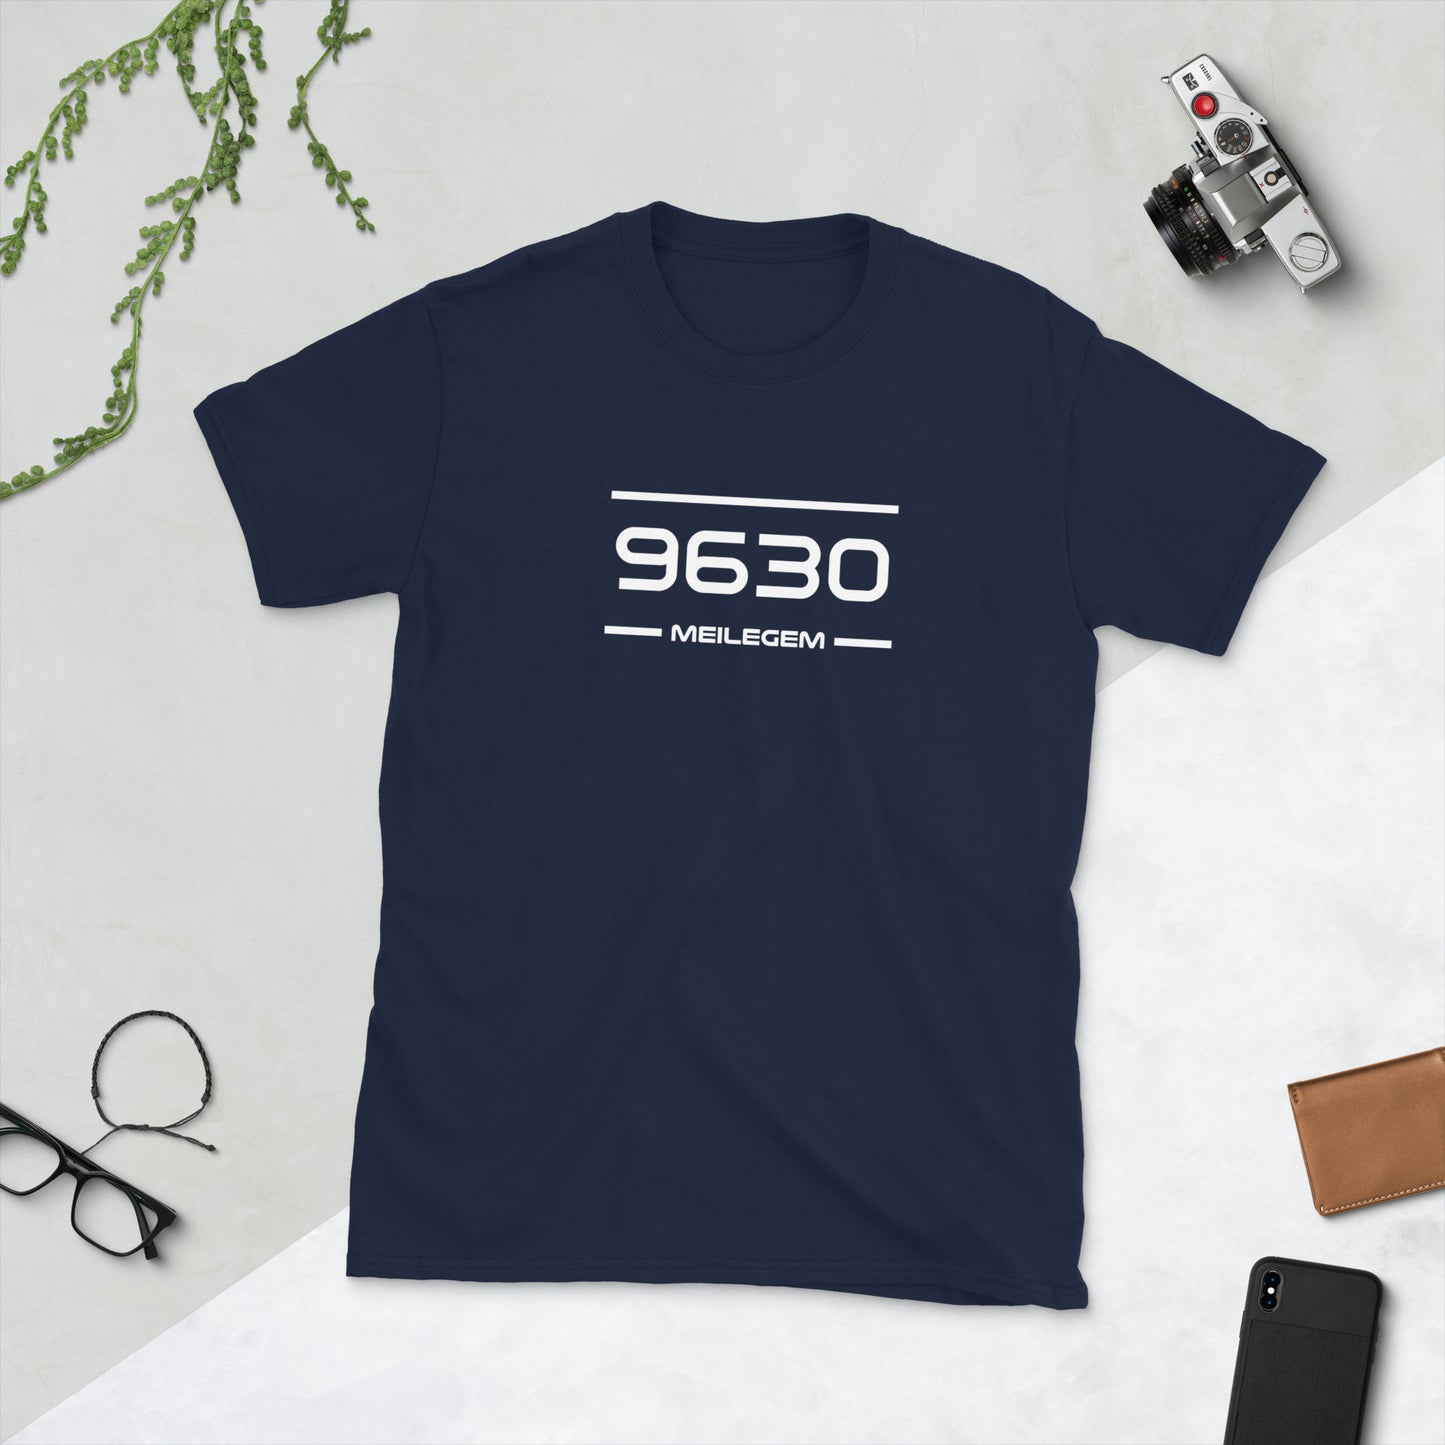 T-Shirt - 9630 - Meilegem